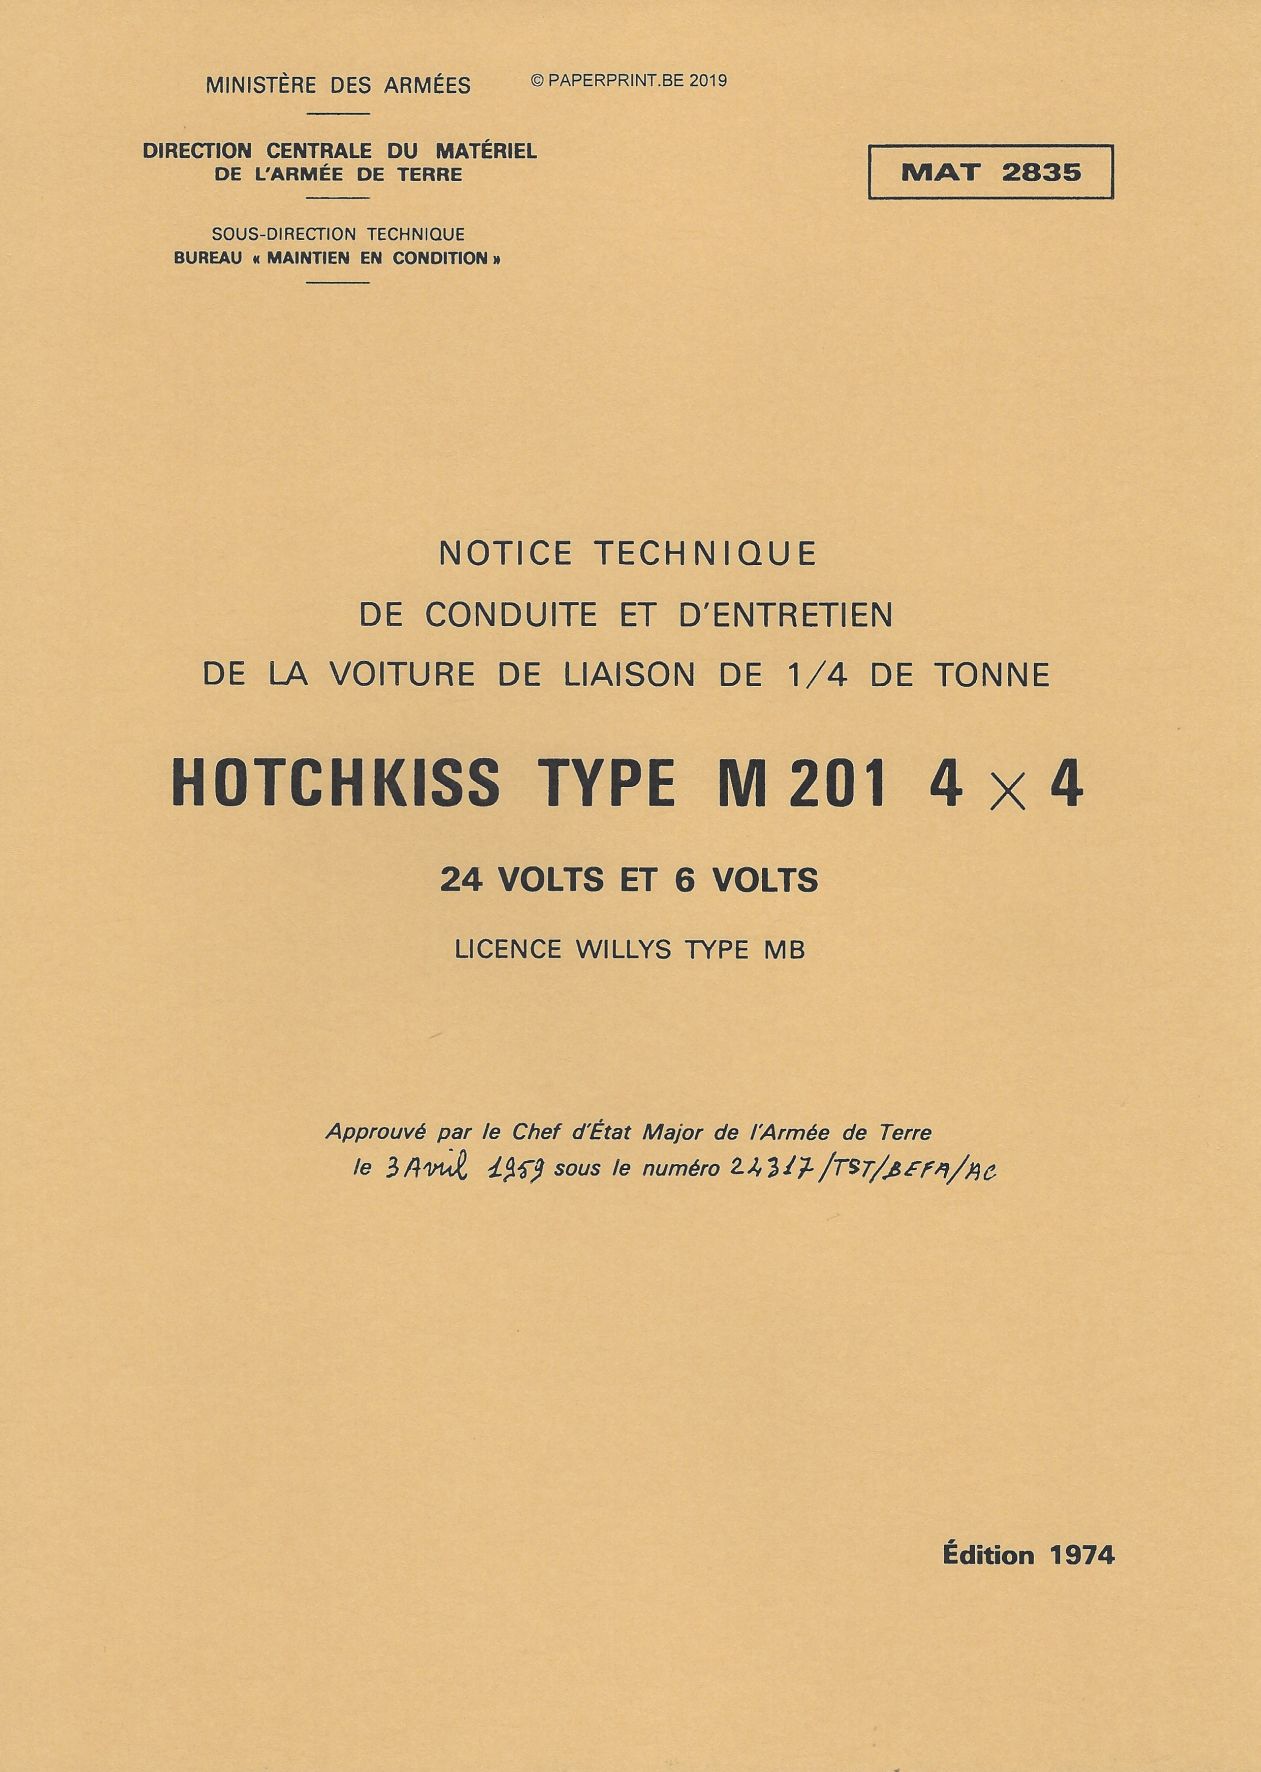 MAT 2835 NOTICE TECHNIQUE DE CONDUITE ET D'ENTRETIEN HOTCHKISS TYPE M201 4x4